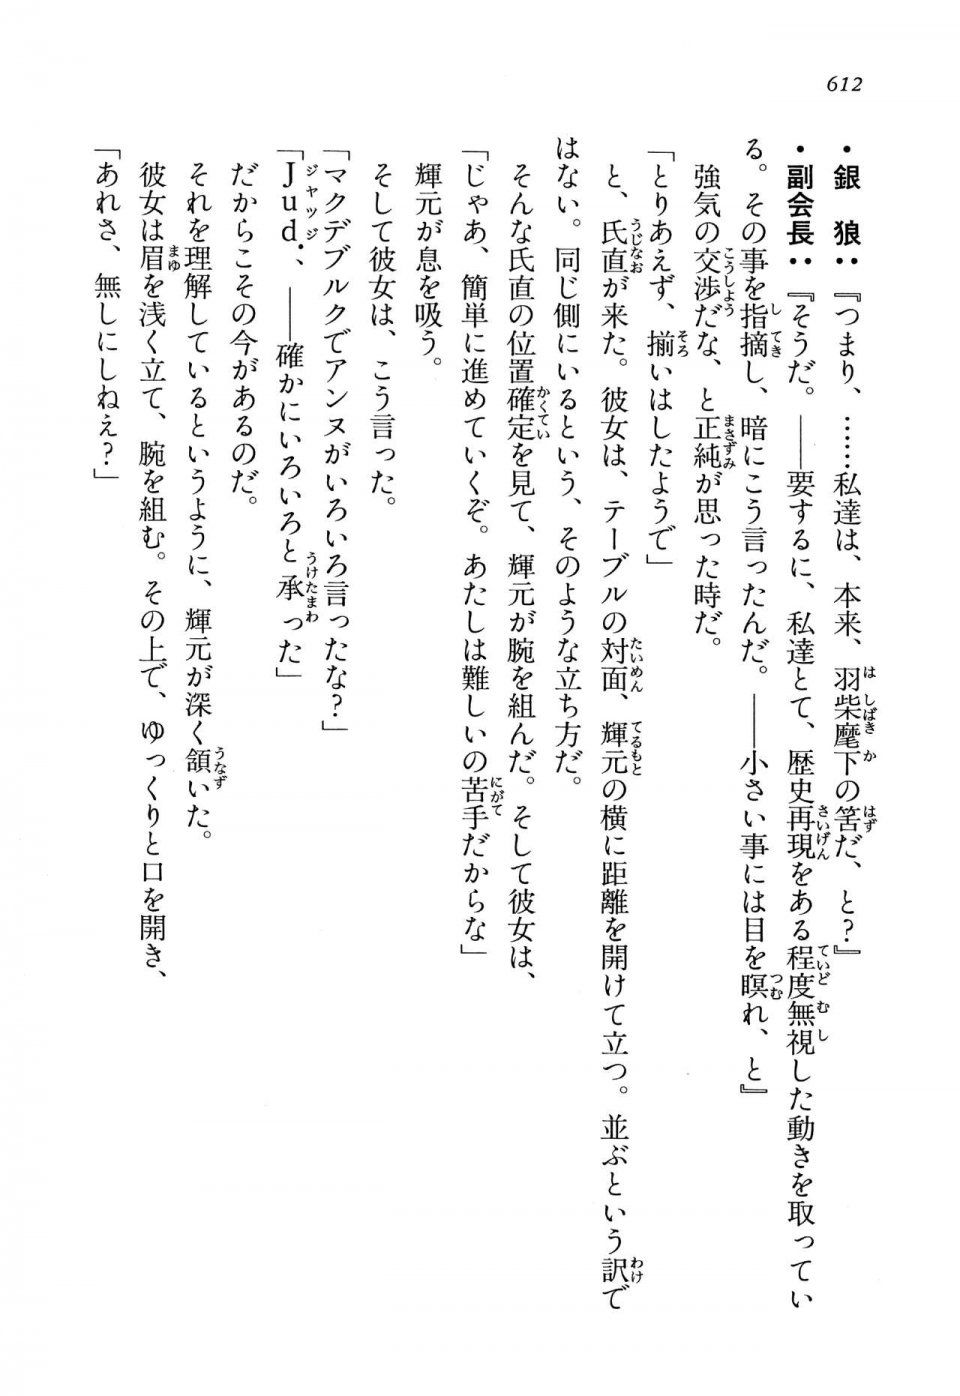 Kyoukai Senjou no Horizon LN Vol 13(6A) - Photo #612